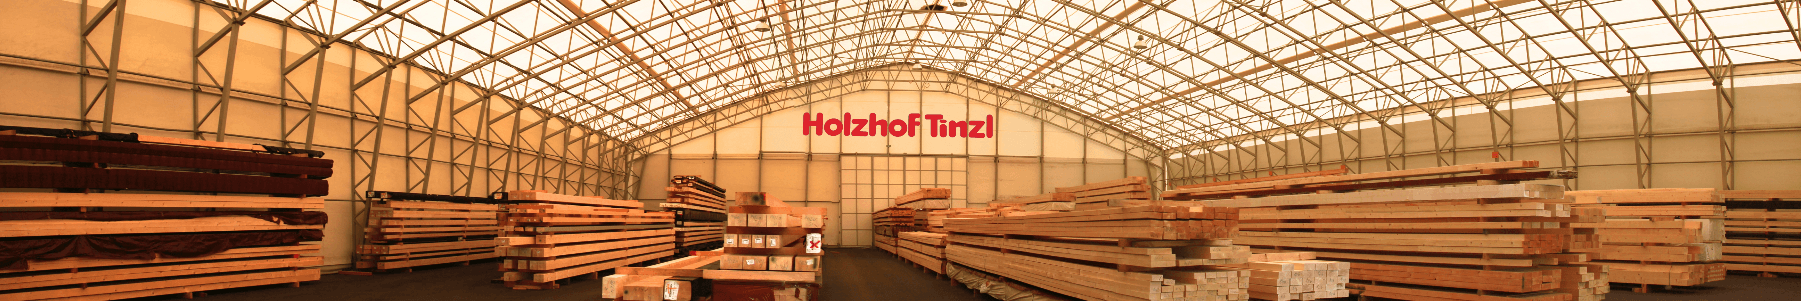 Jobs bei Holzhof Tinzl